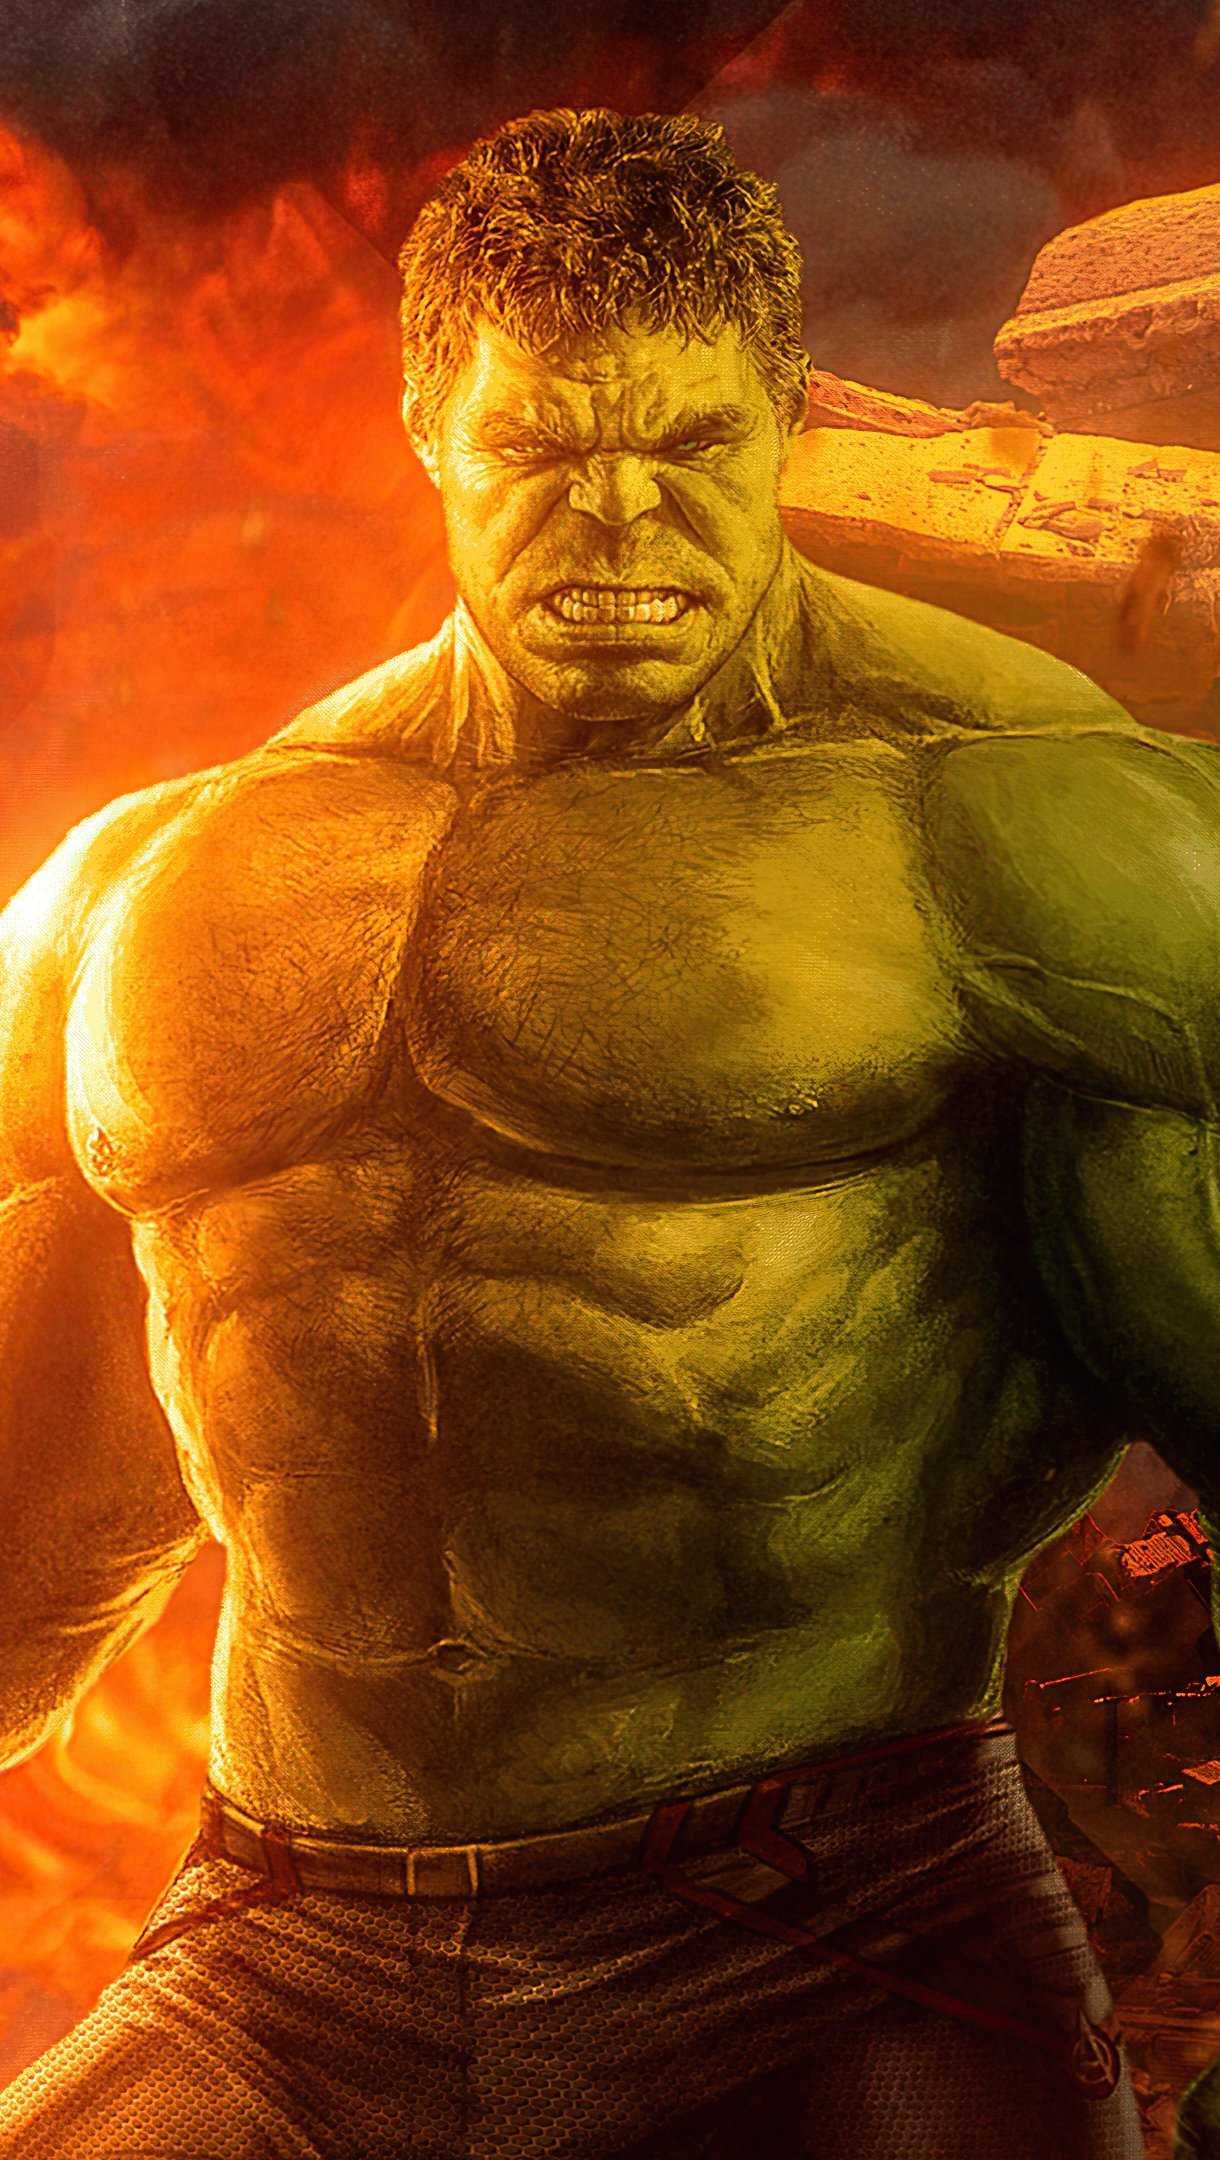 incredible hulk wallpaper